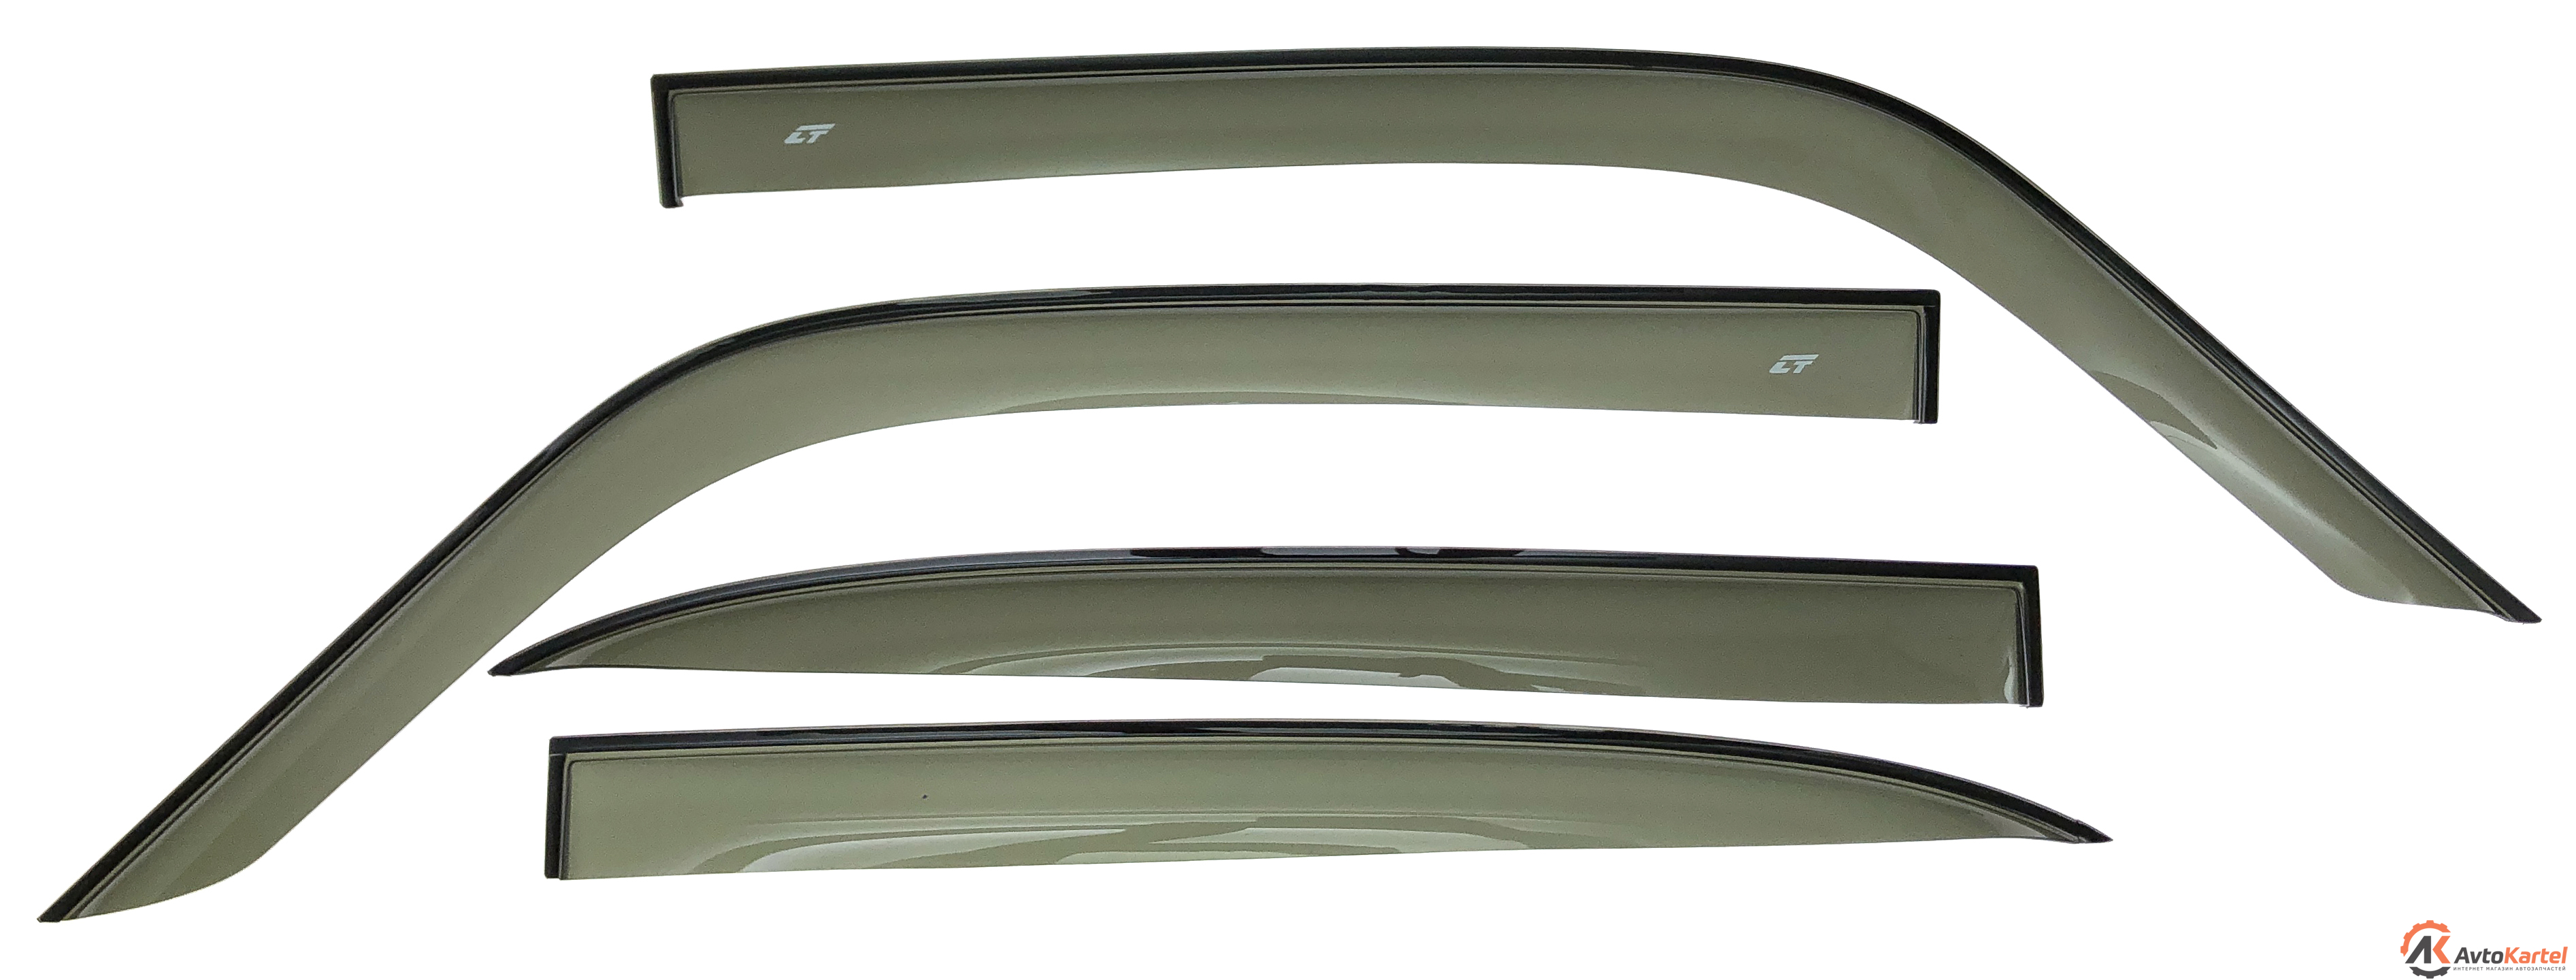 Дефлекторы на окна комплект на 4 двери для ГАЗ 31029, 31105, 3110, 31102